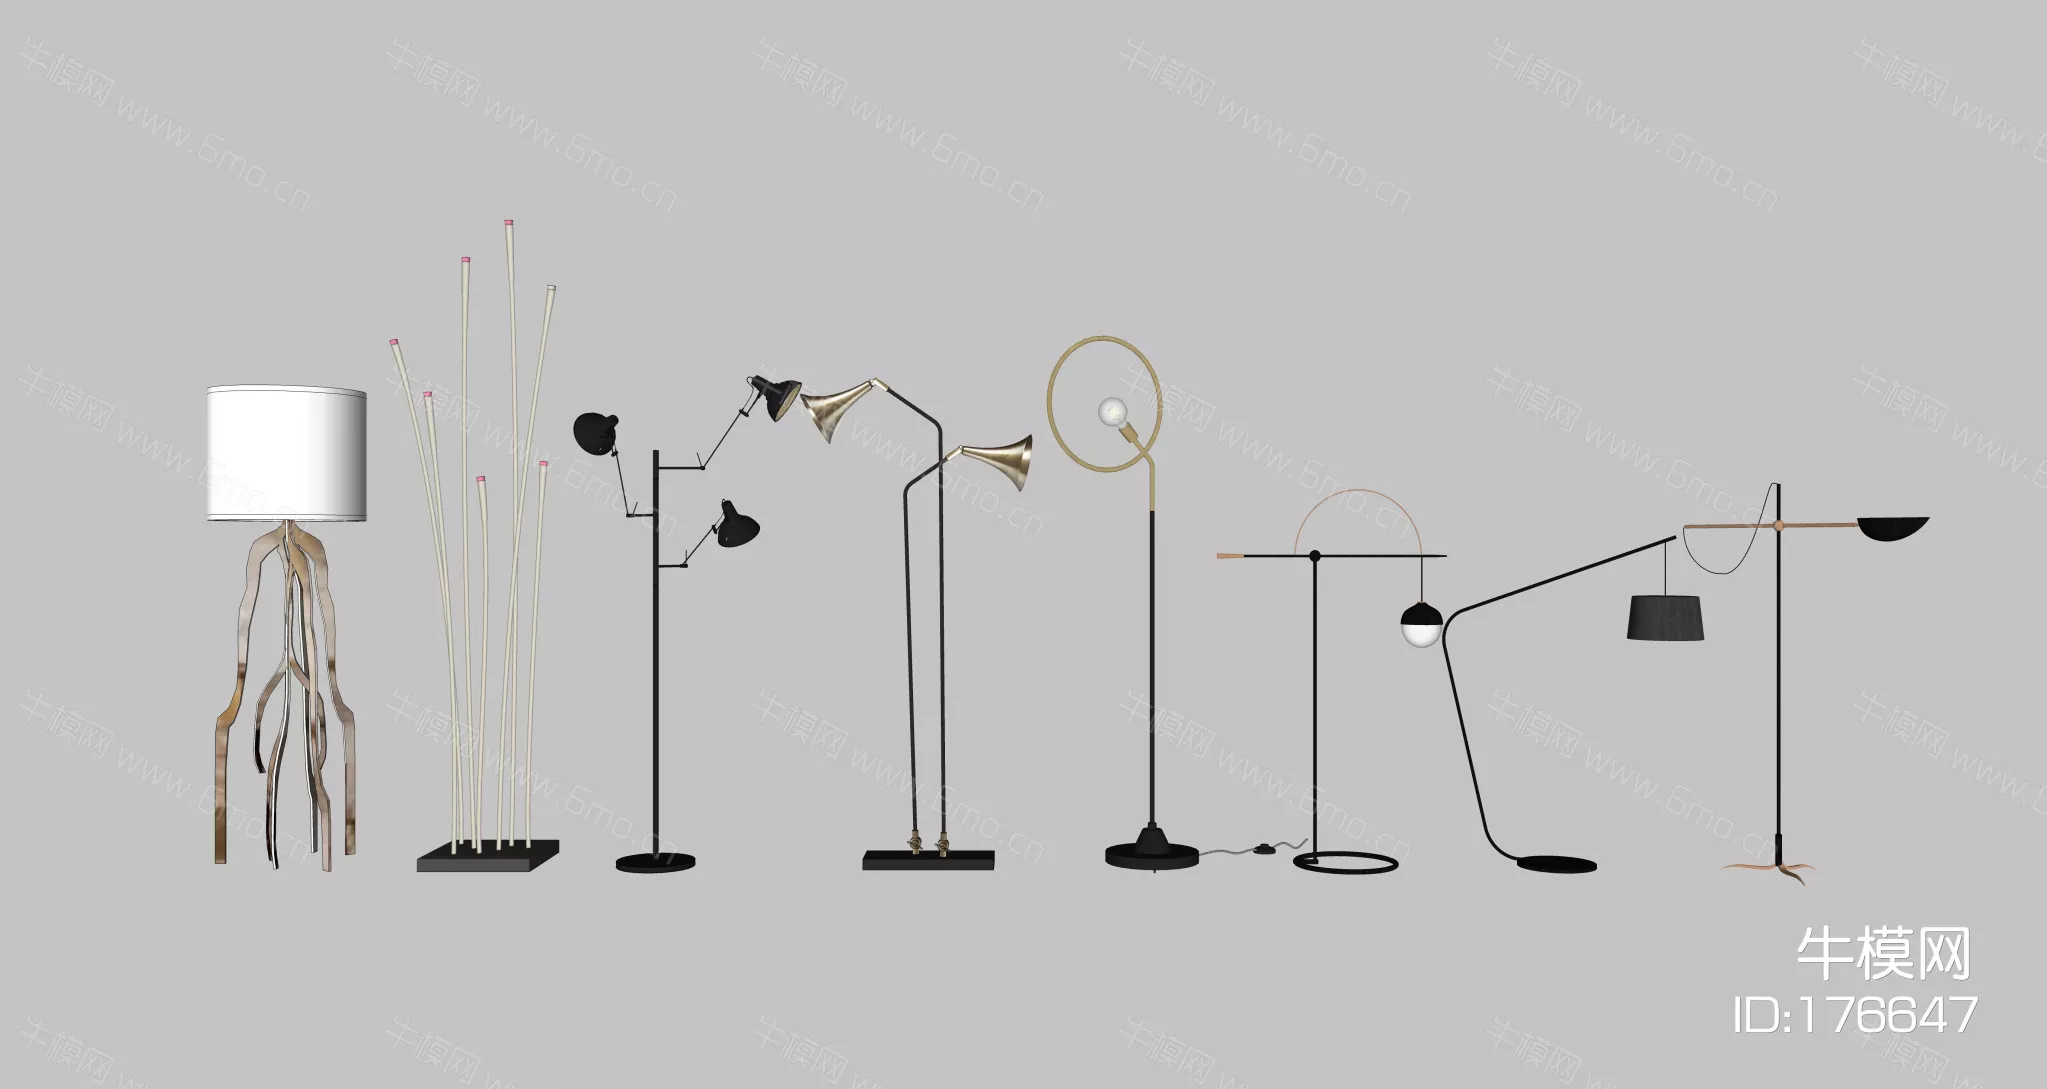 MODERN FLOOR LAMP - SKETCHUP 3D MODEL - ENSCAPE - 176647